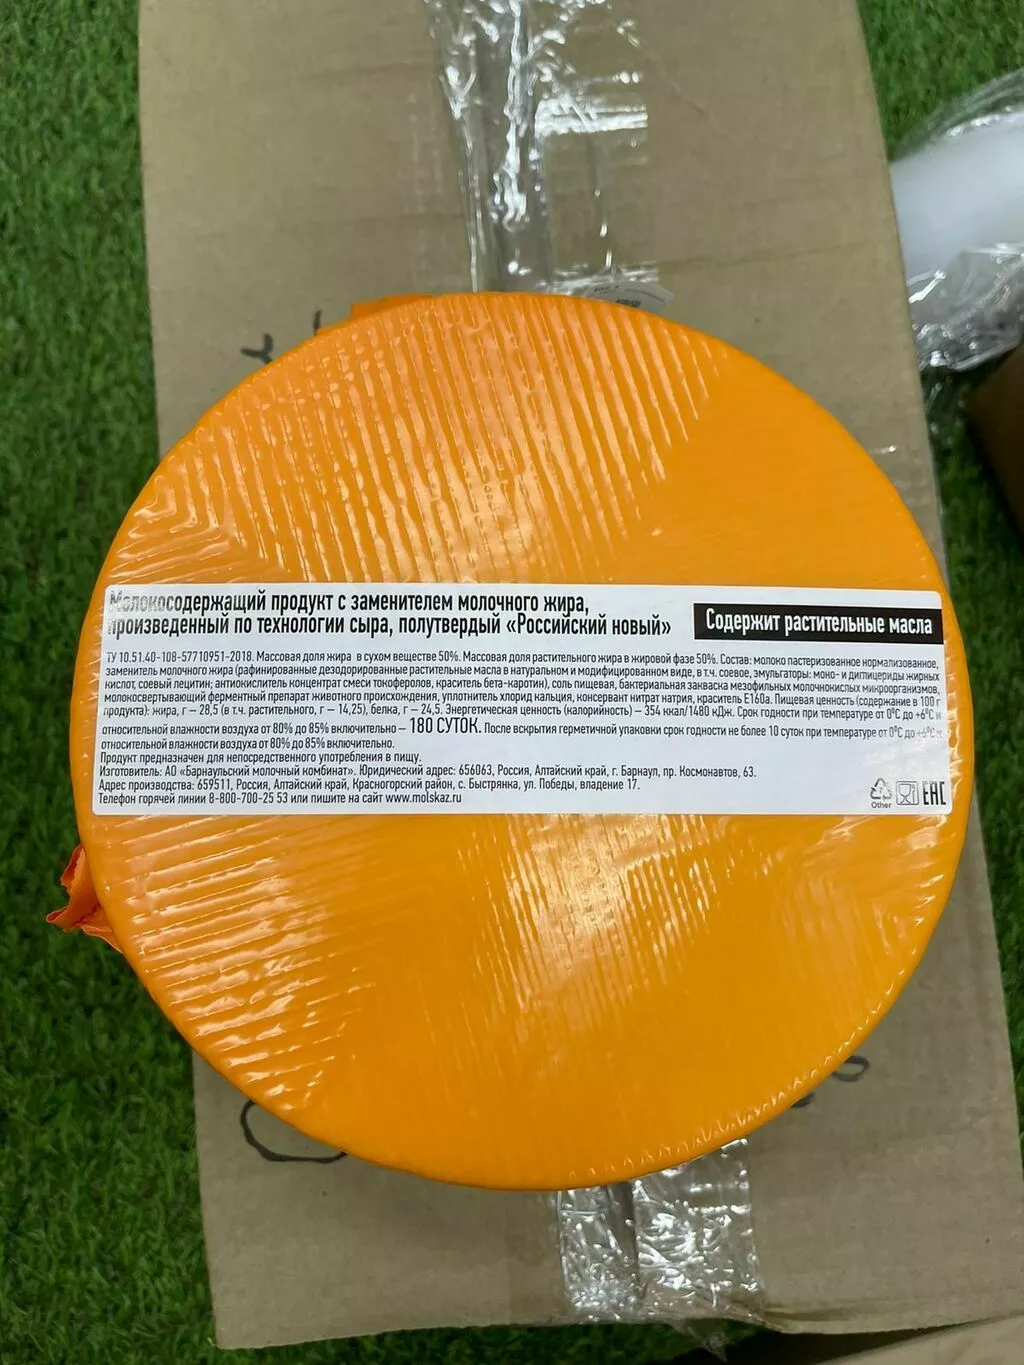 фотография продукта Сырный продукт российский цилиндр 3.7 кг